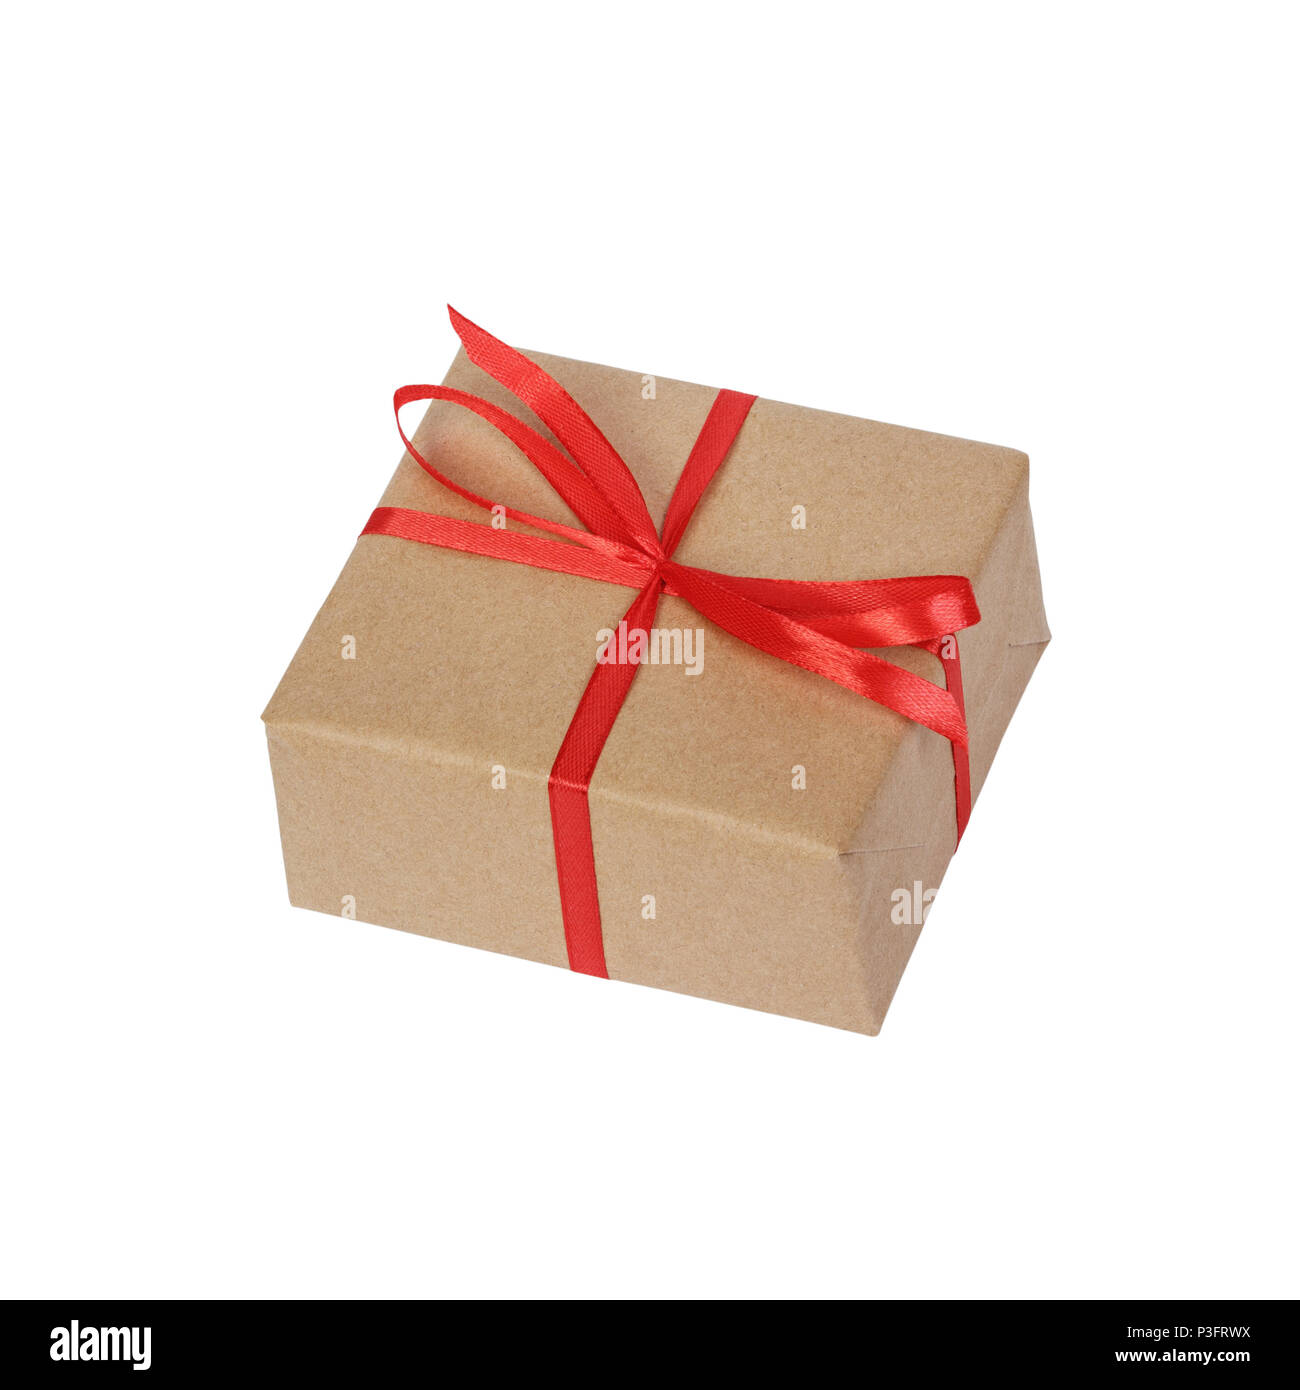 Caja regalo de carton reciclado con lazo rojo Stock Photo